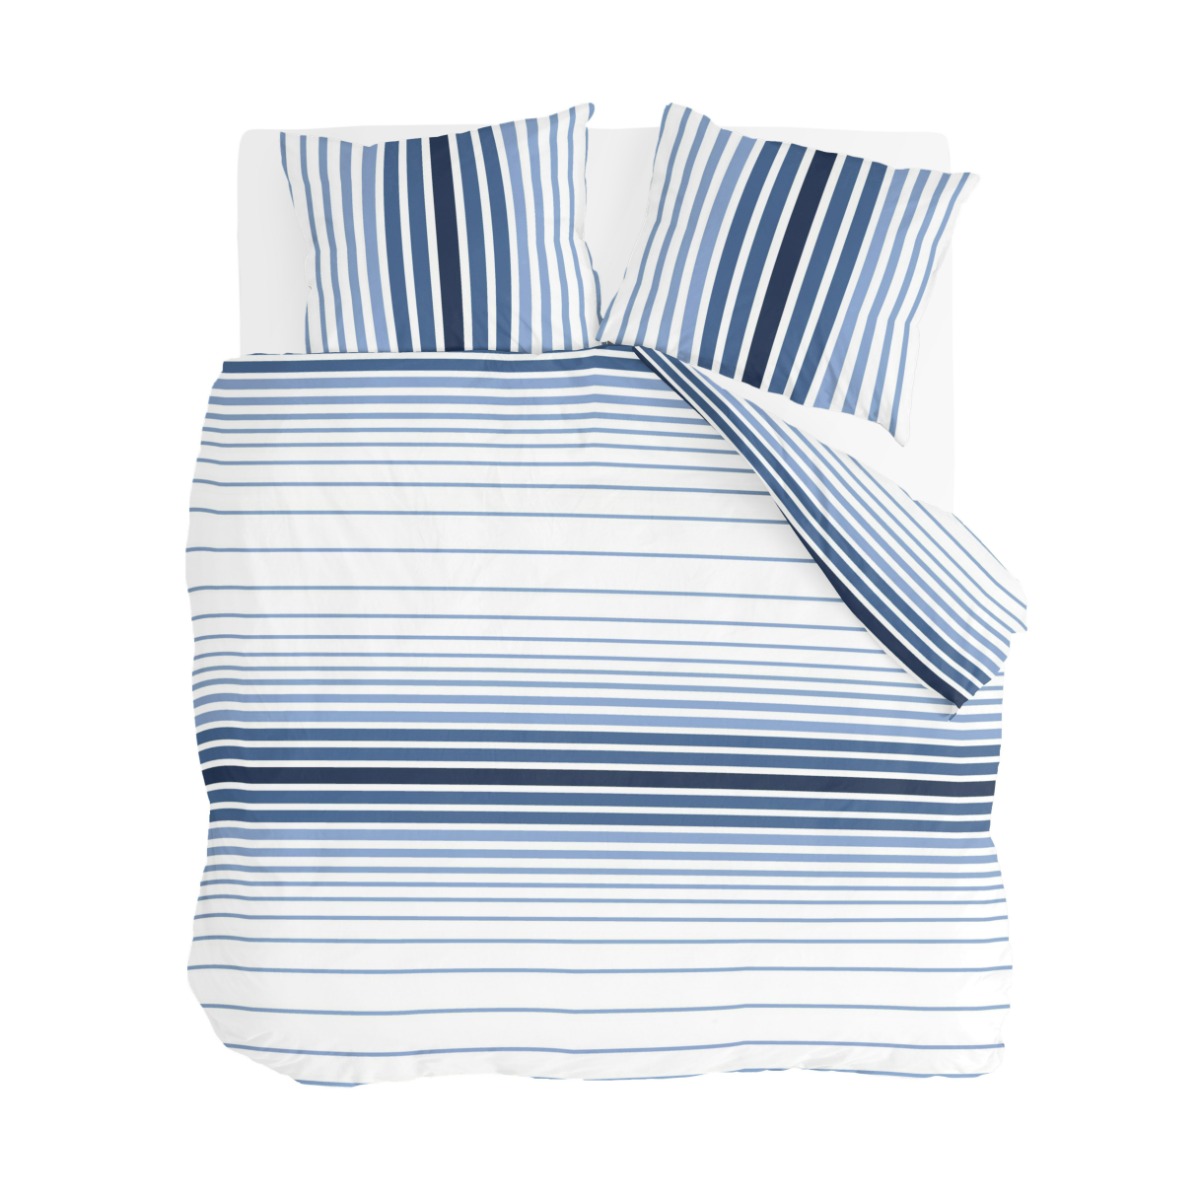 Byrklund Dekbedovertrek Beach Feel with Stripes Blauw / Wit - 240x220 cm